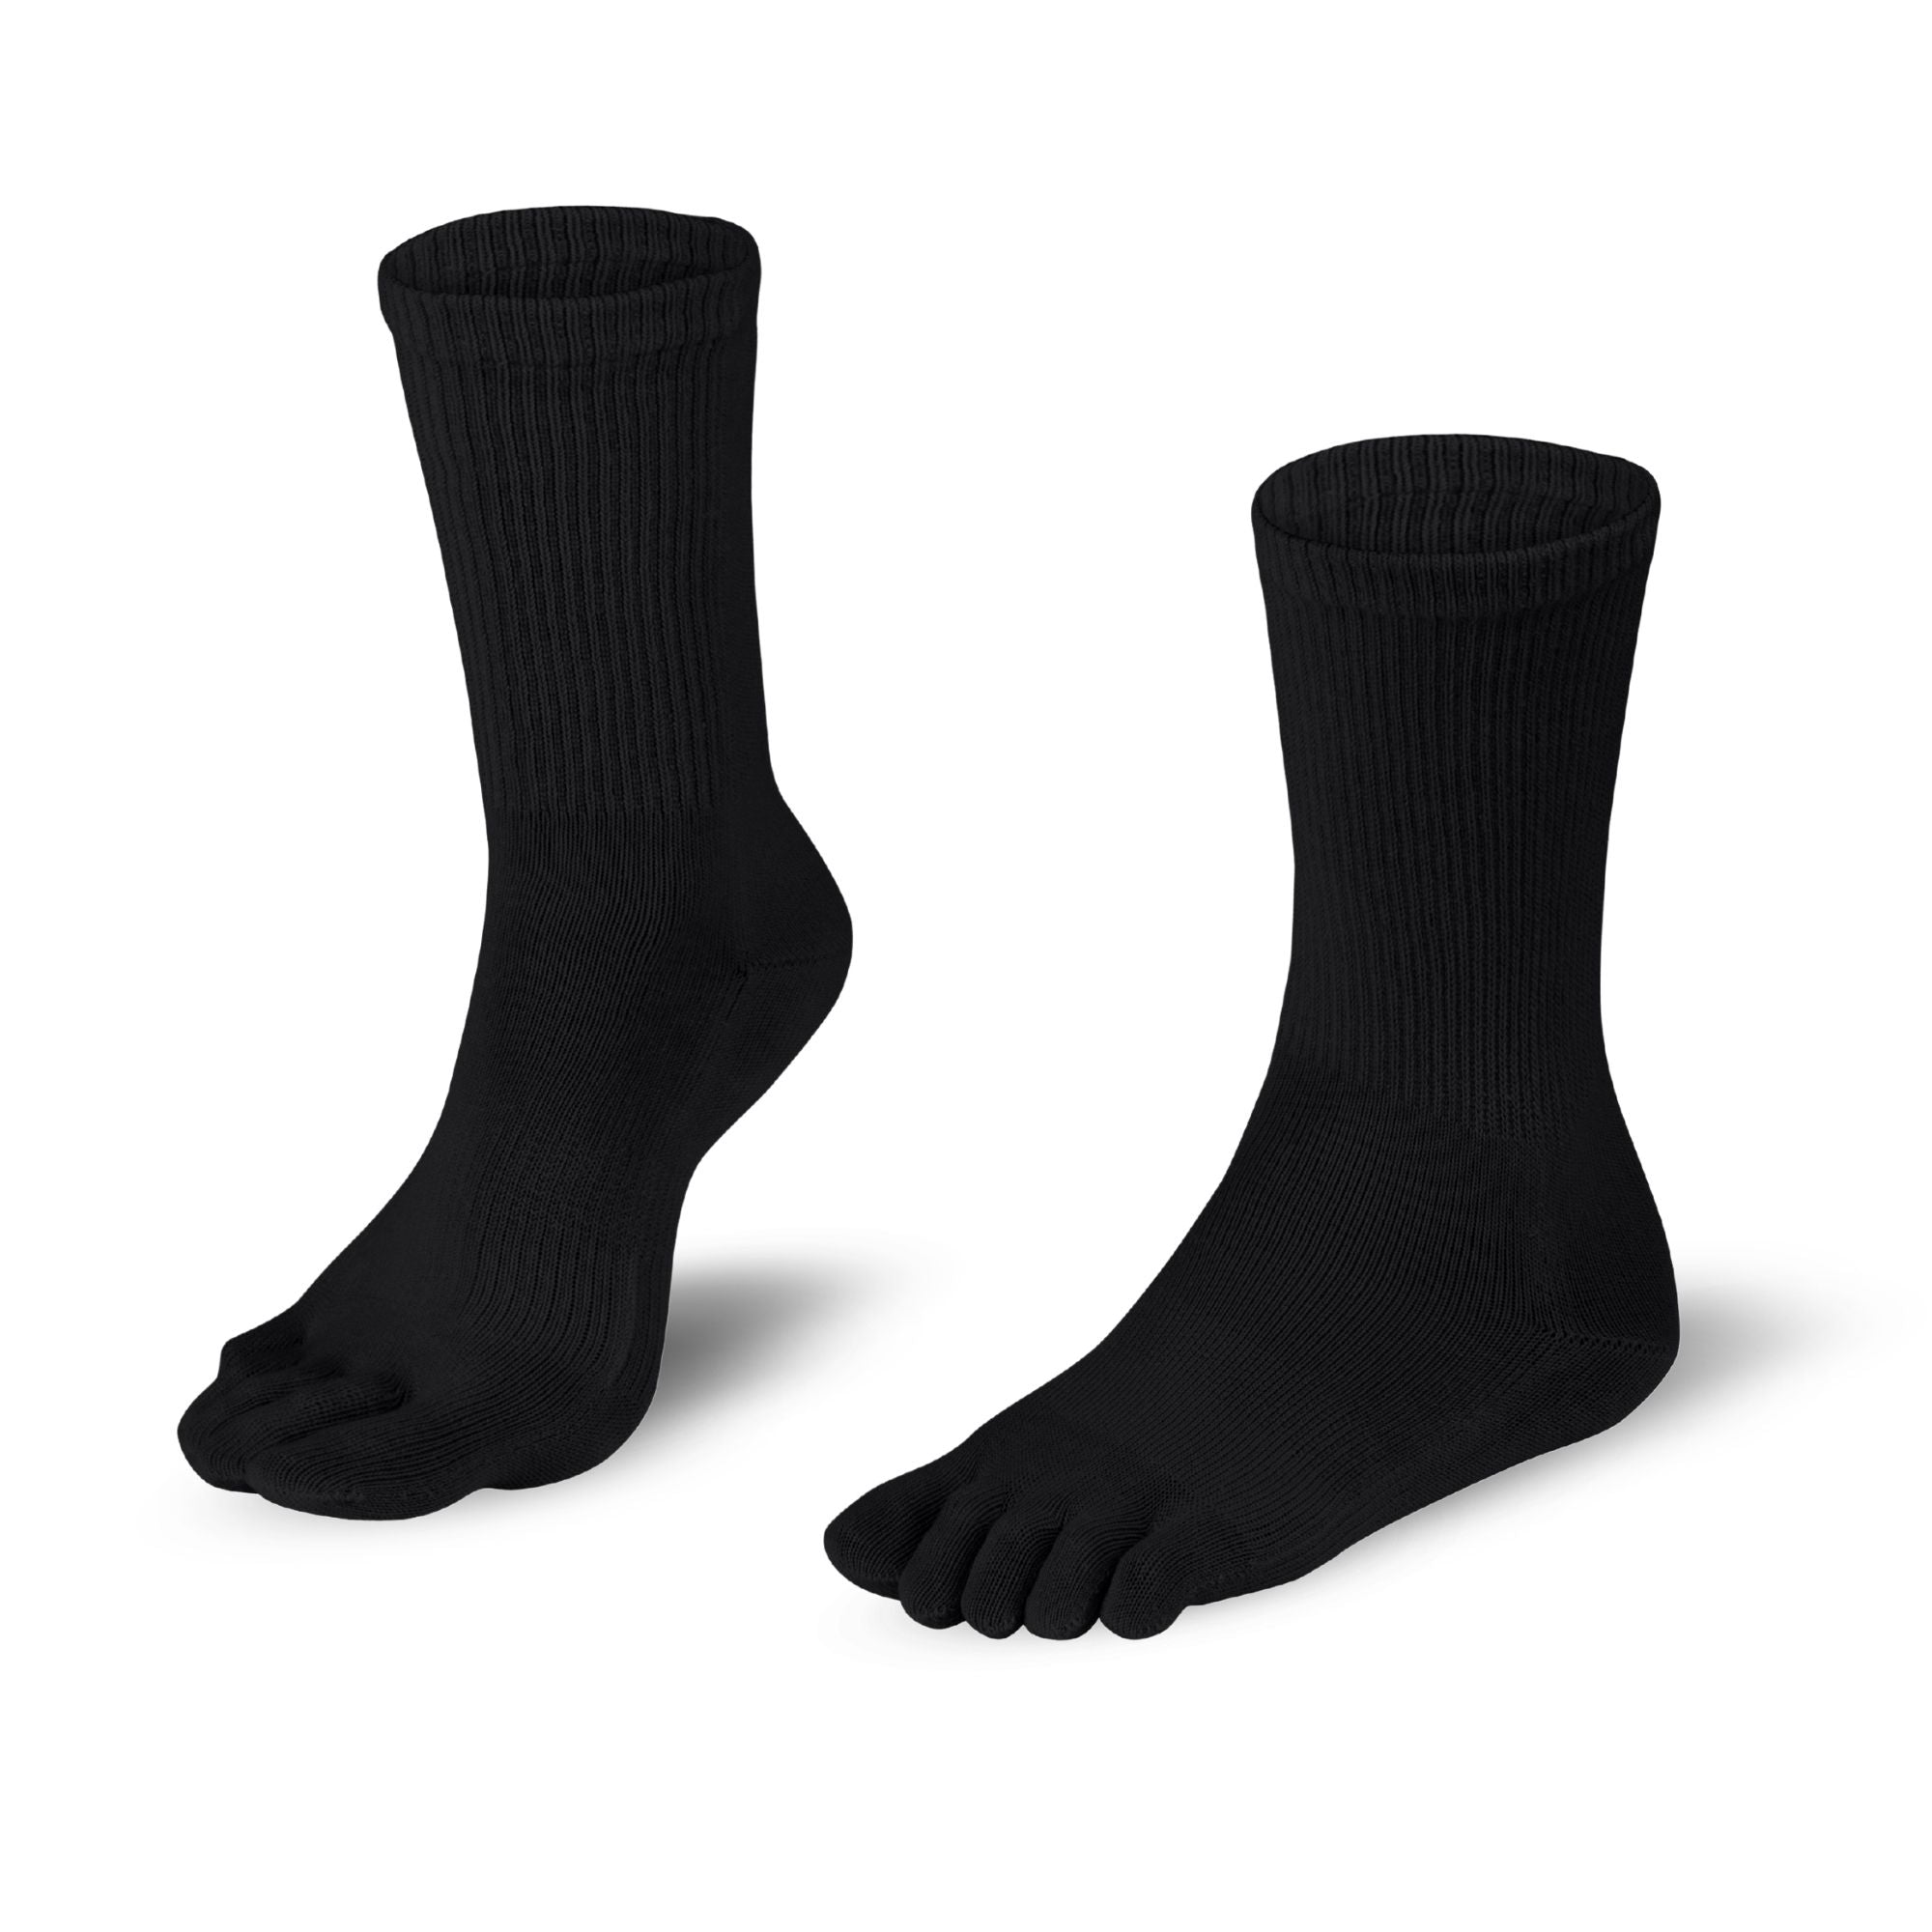 Dr. Foot Hallux Valgus chaussettes à orteils de Knitido en noir